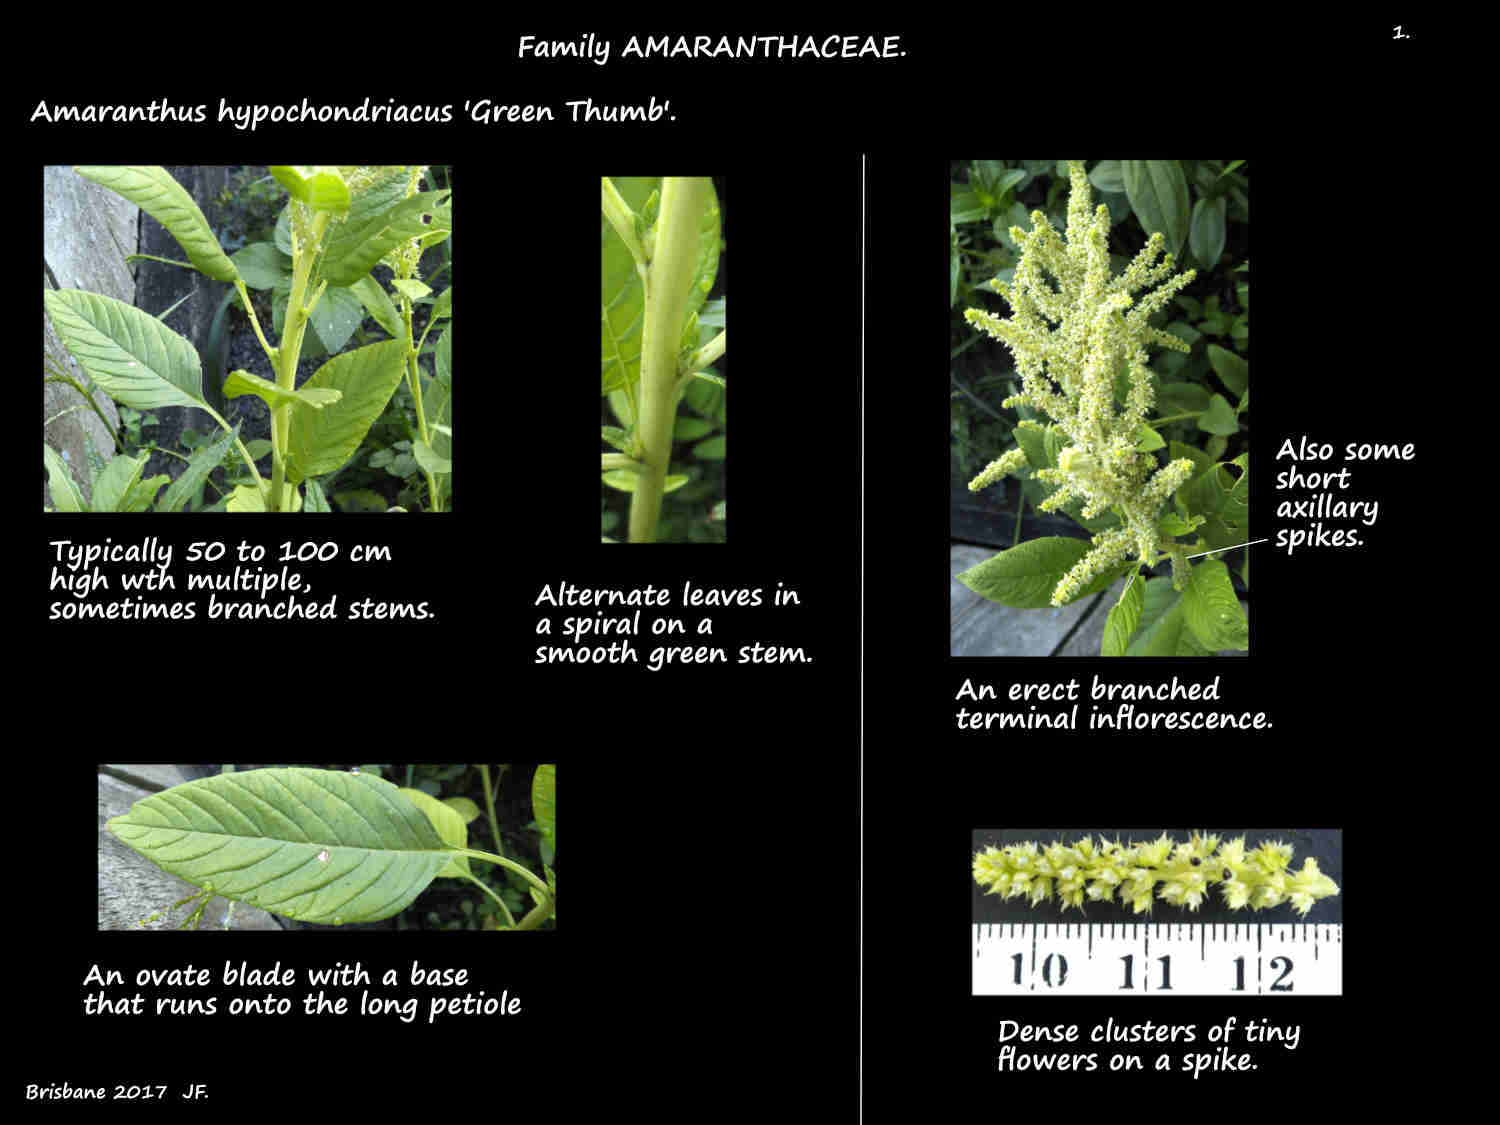 1 Amaranthus hypochondriacus stems, leaves & inflorescences